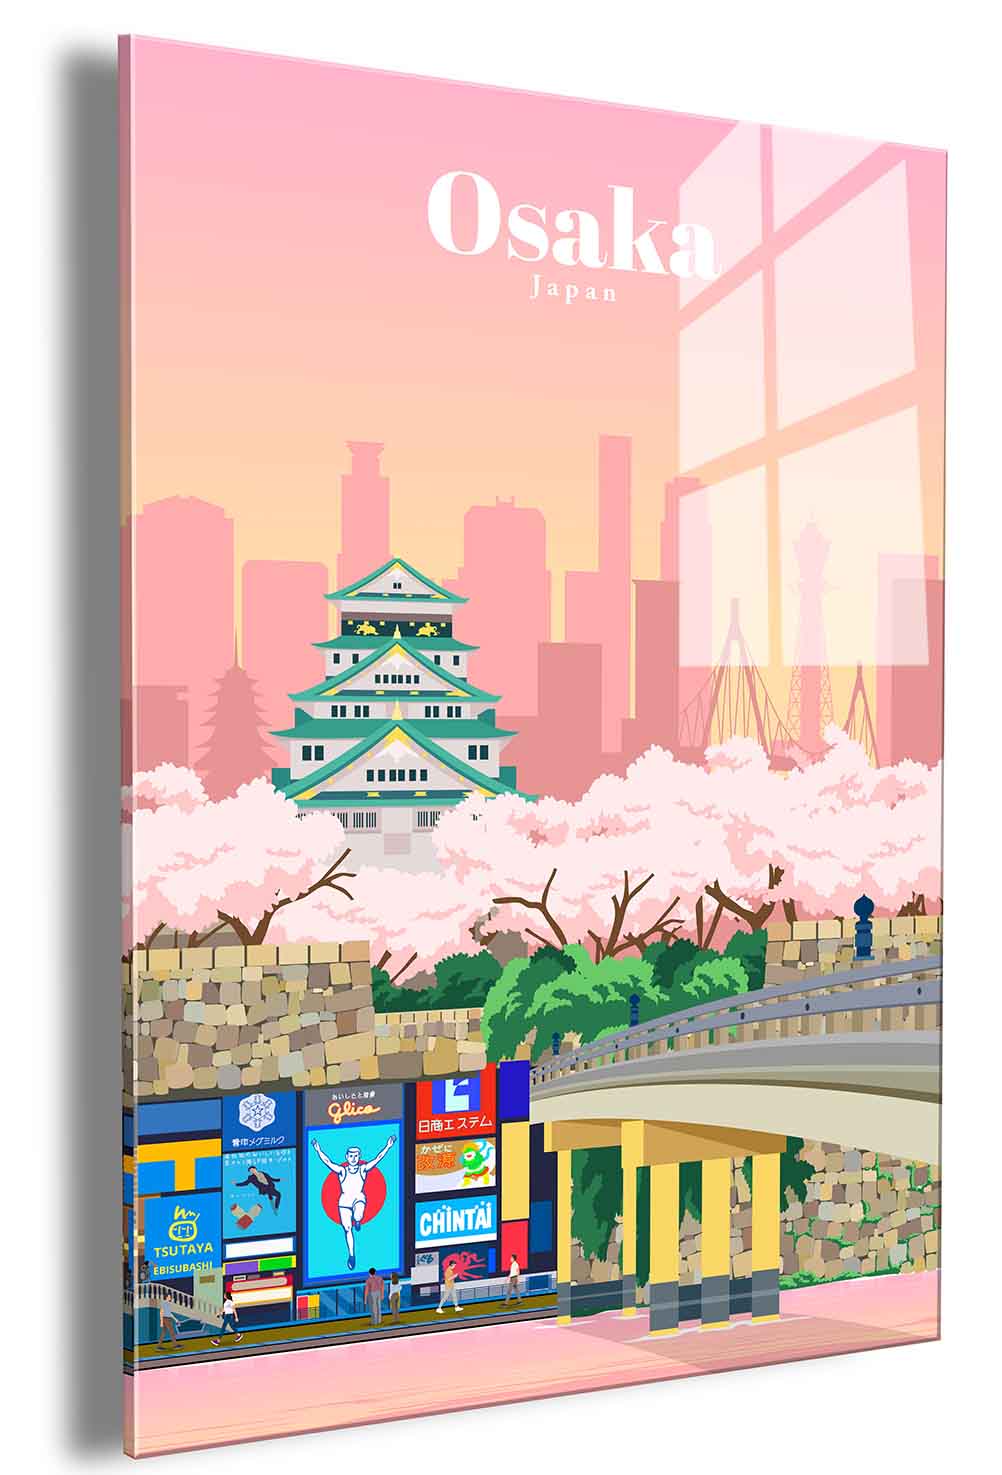 Osaka – gallerypanda